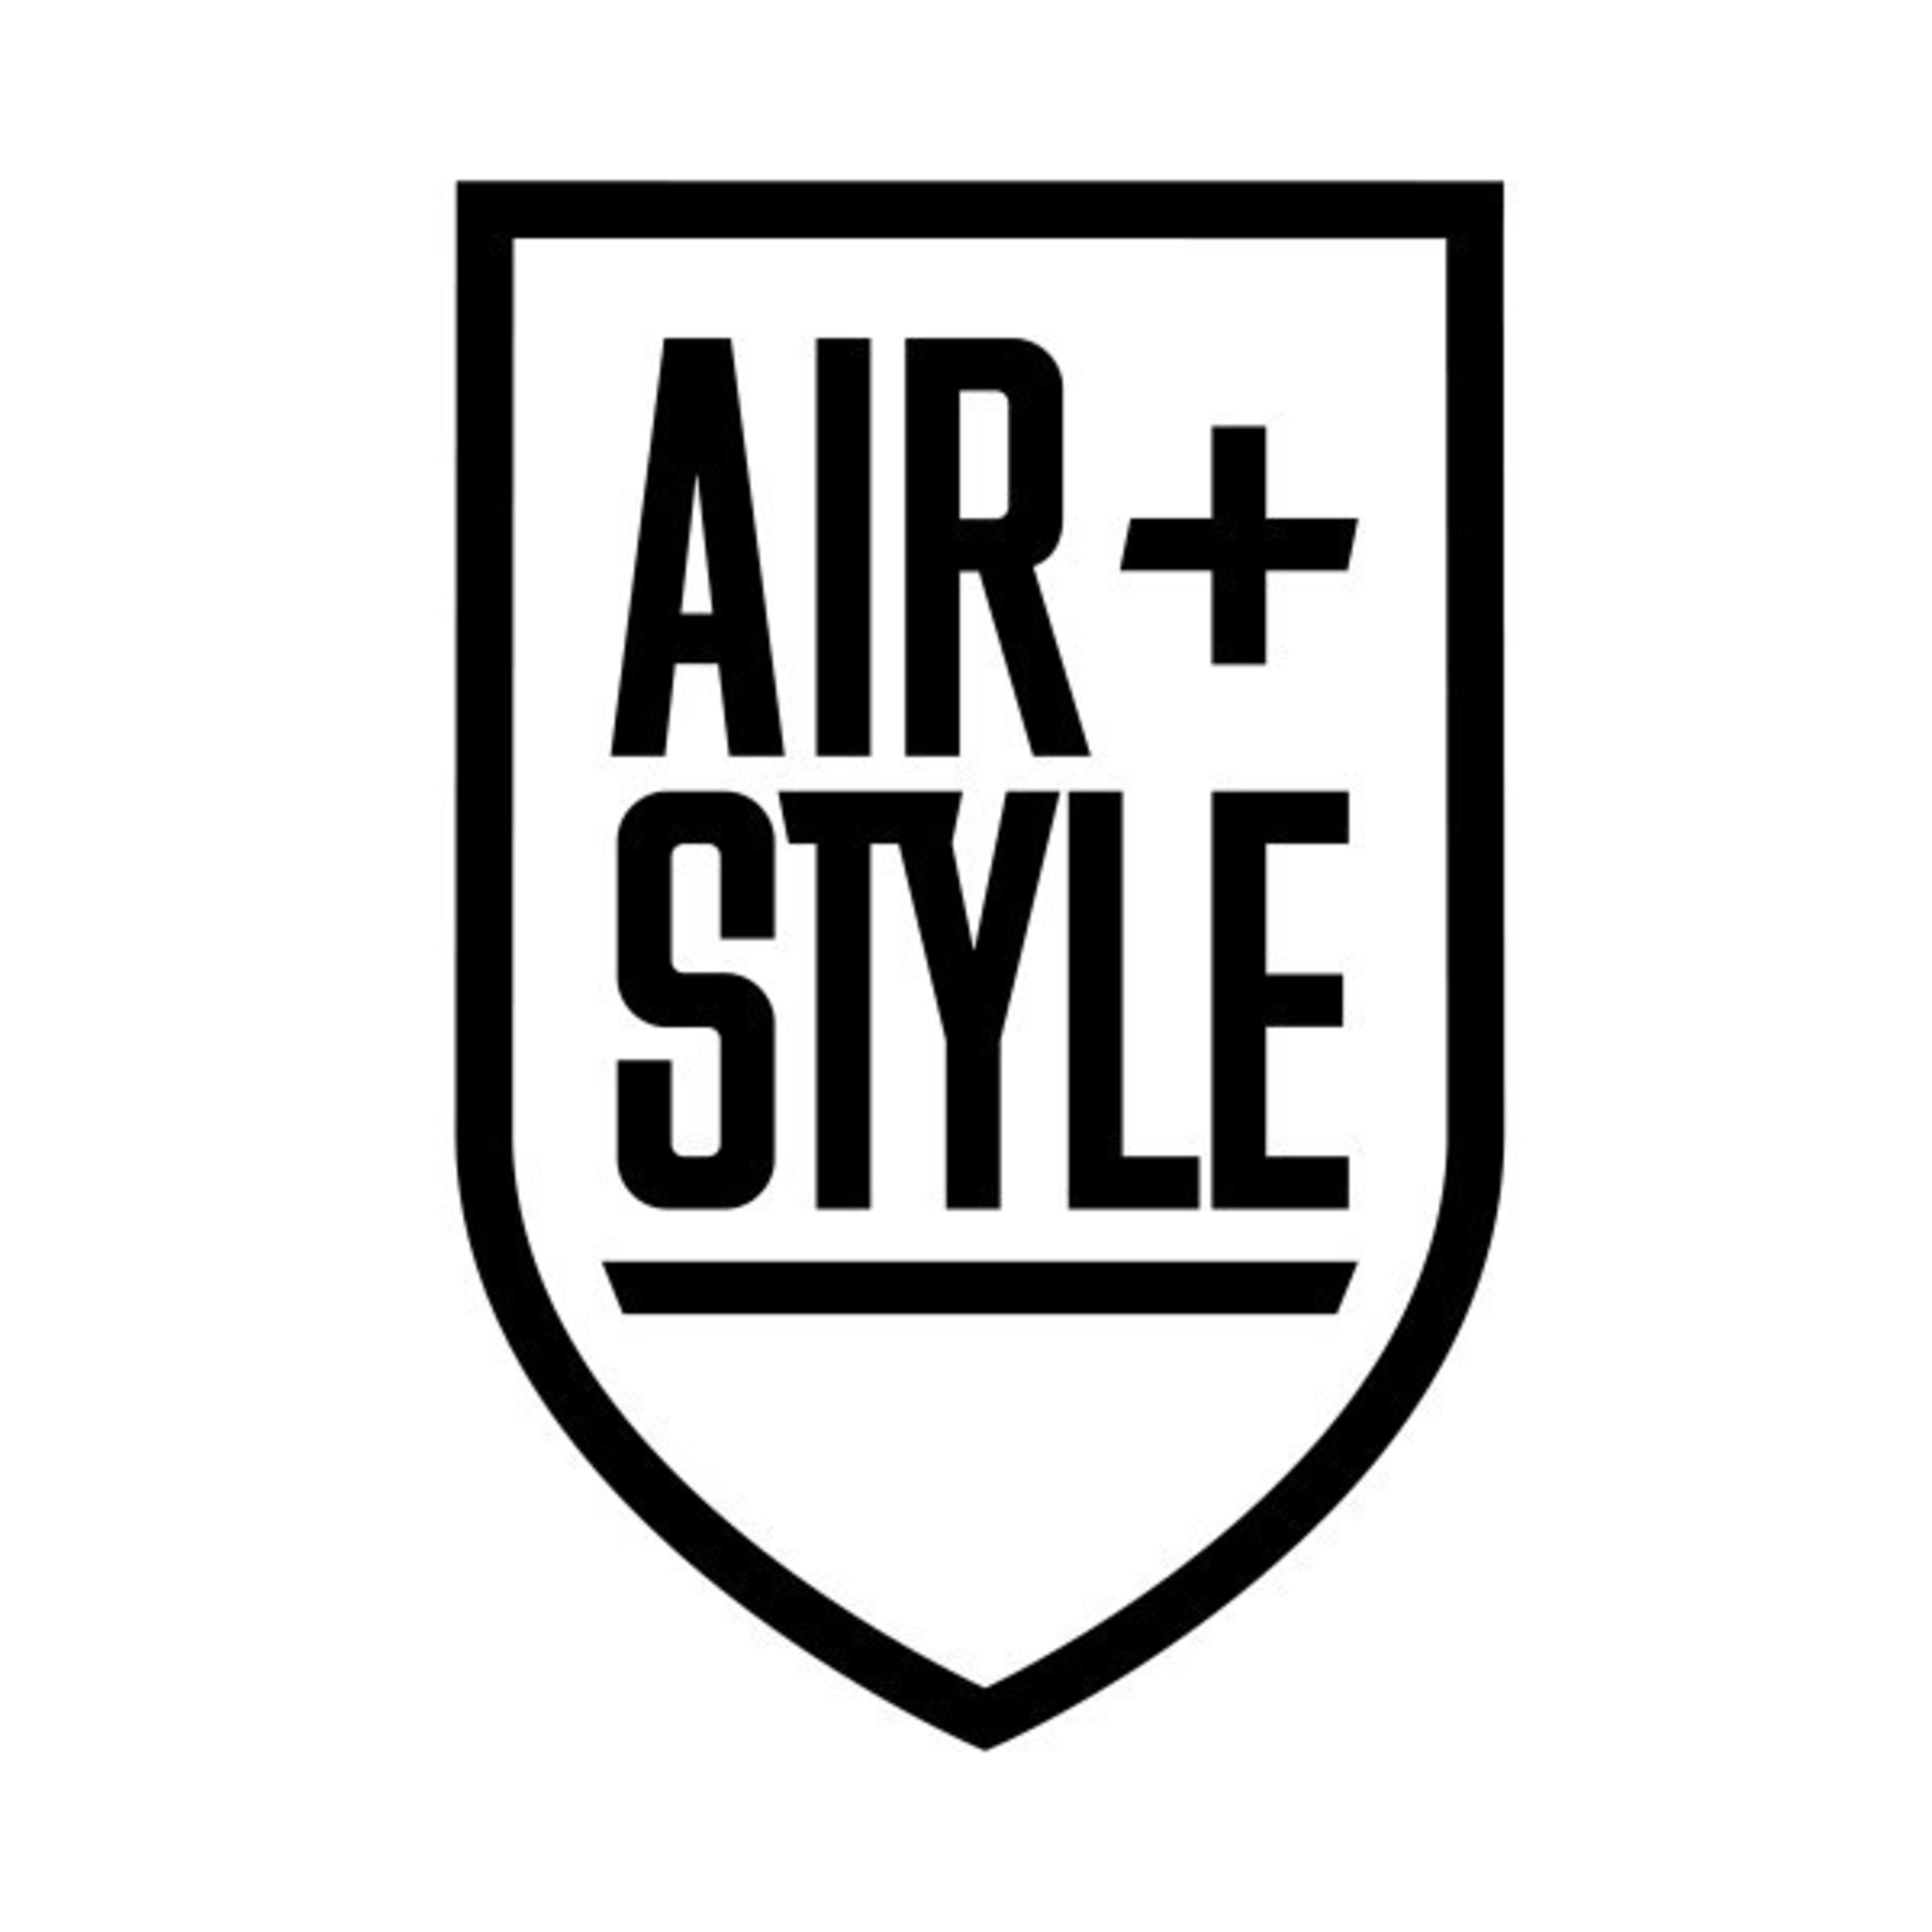 Air + Style Logo